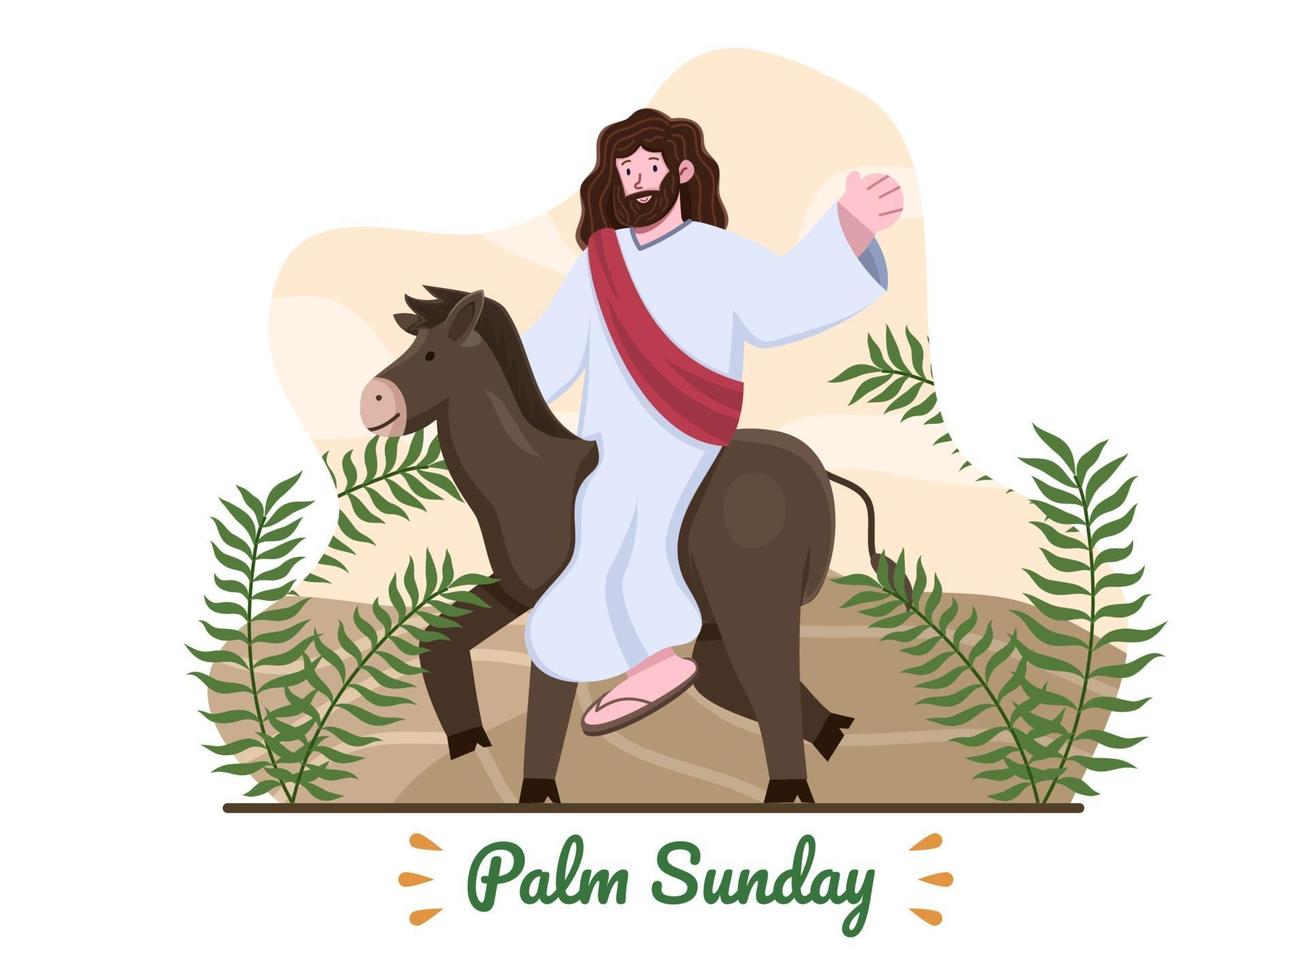 palmzondag illustratie met jezus rijden op een ezel en met palmbladeren. Jezus rijdt op een ezel Jeruzalem binnen. christelijke palmzondag religieuze feestdag. geschikt voor wenskaart, banner, briefkaart, web, enz vector